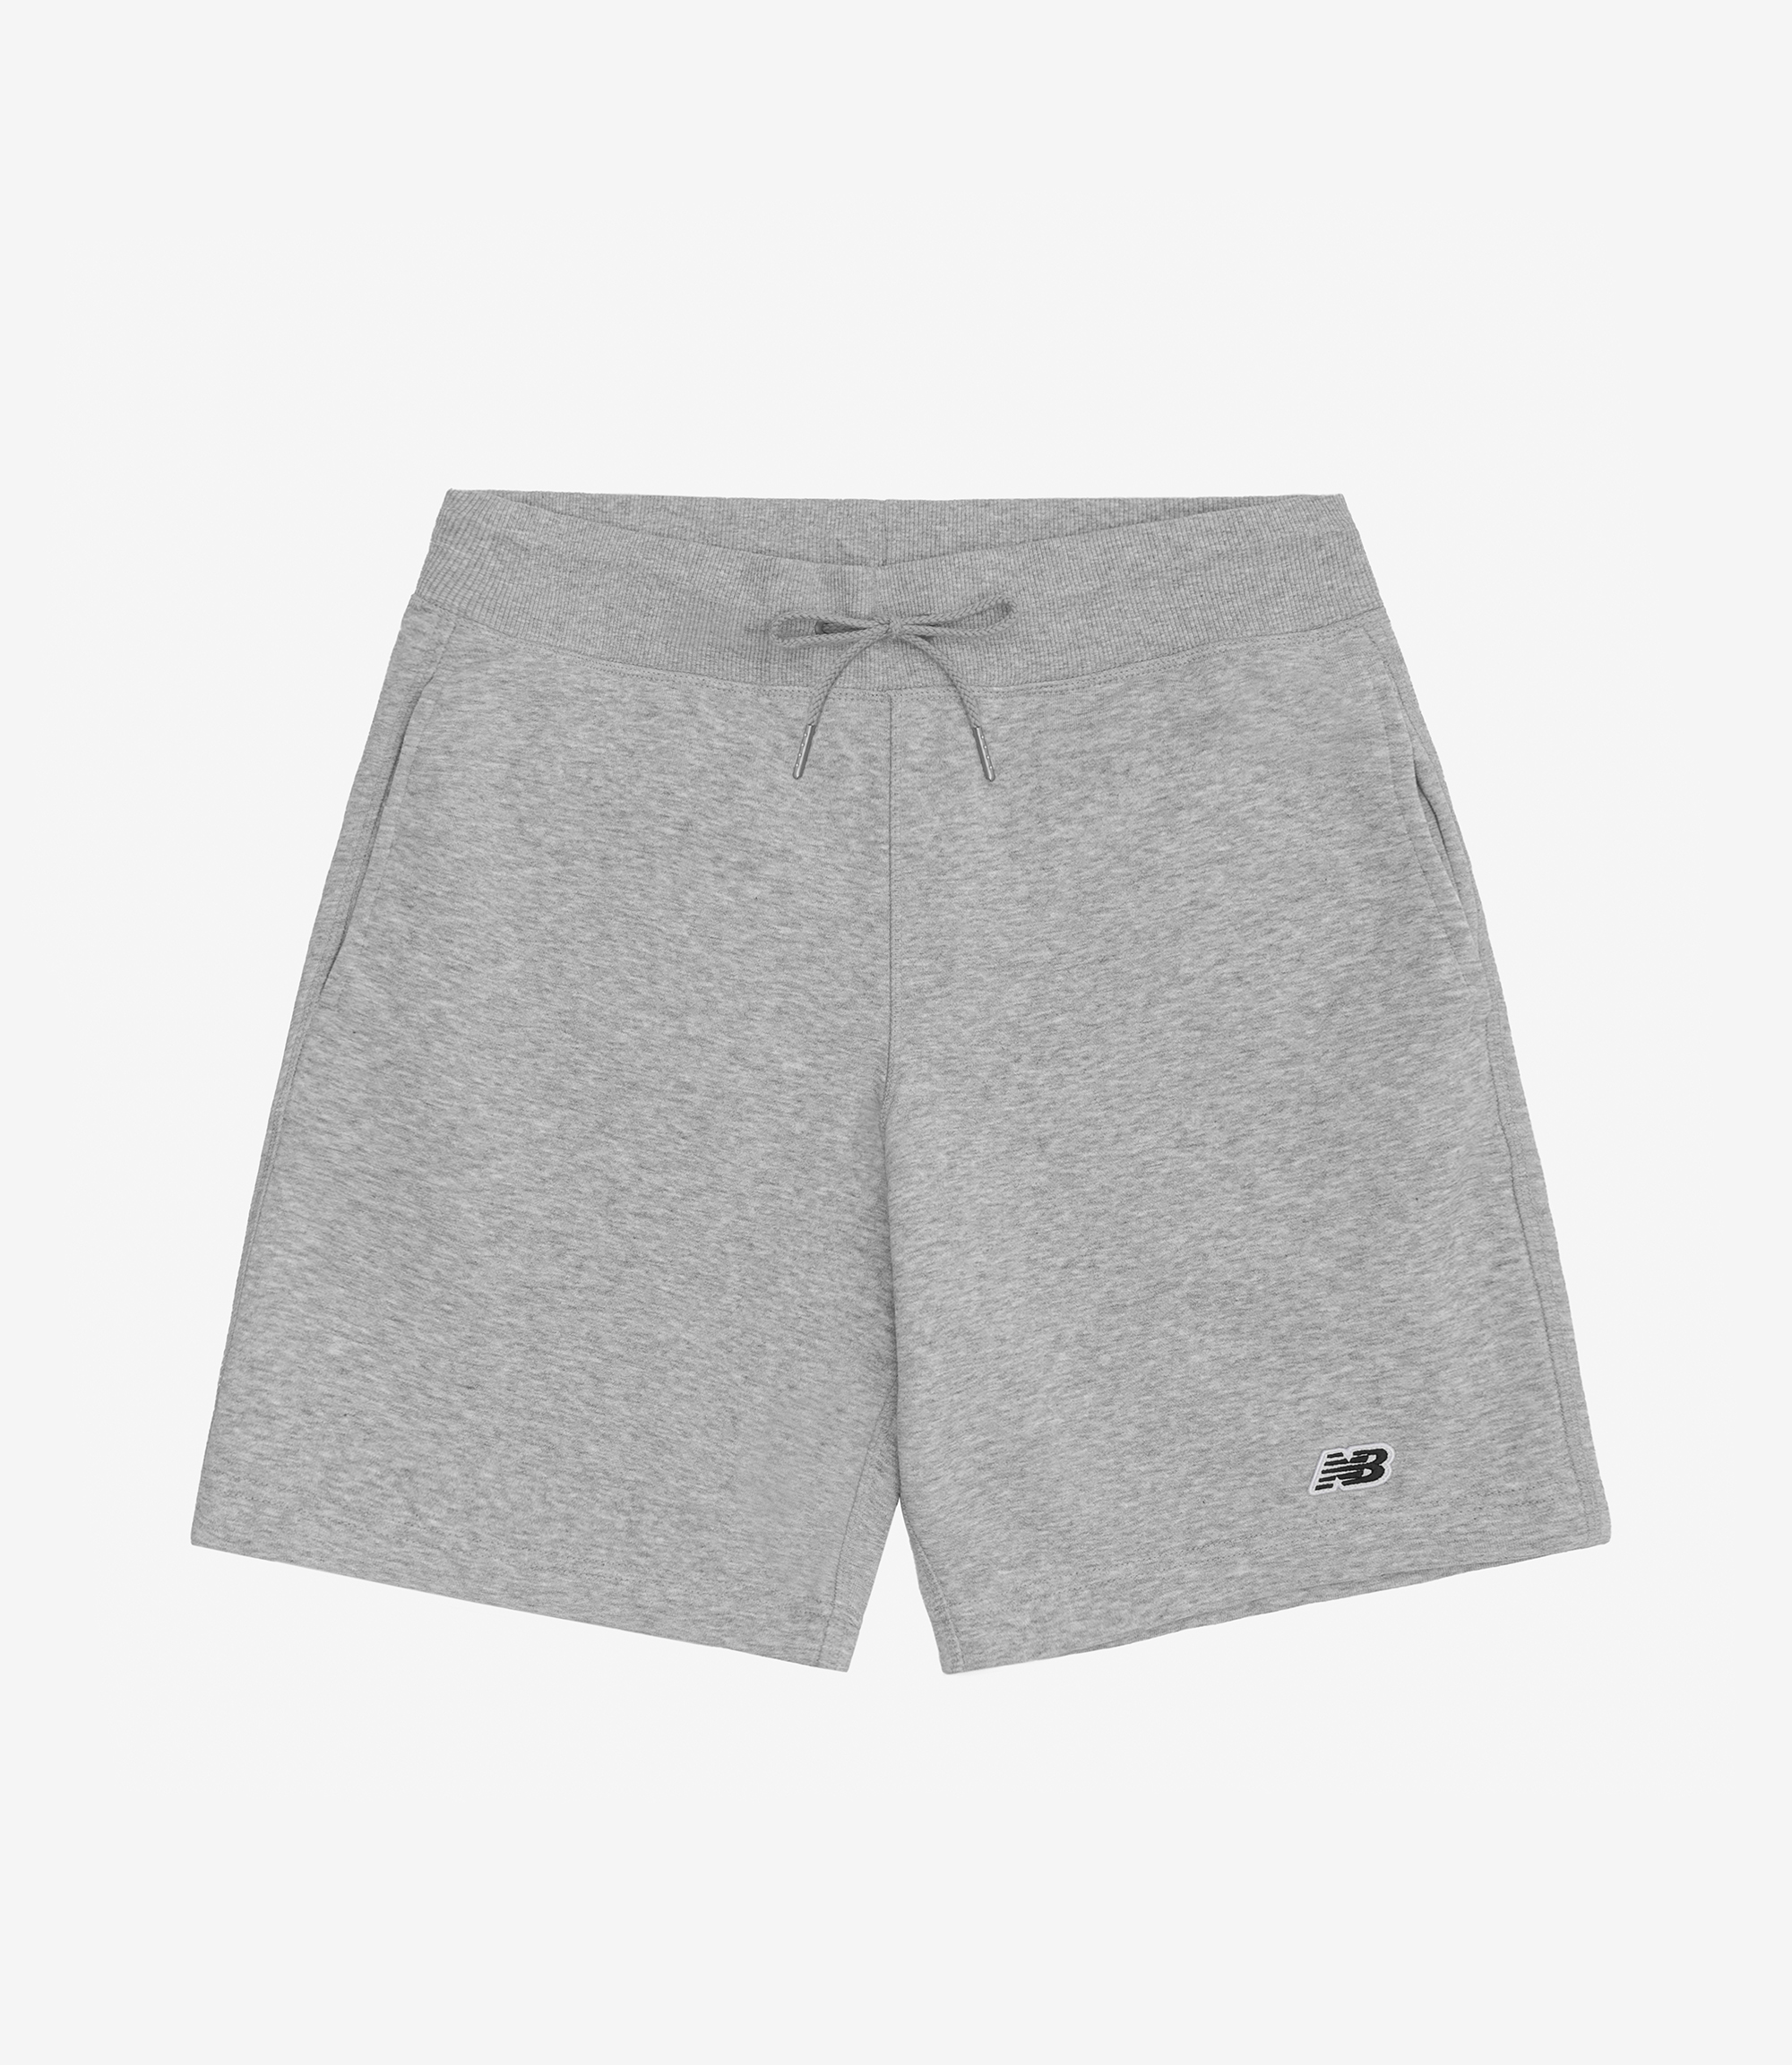 Shop New Balance Small Logo Shorts Athletic Grey/Black at itk online store